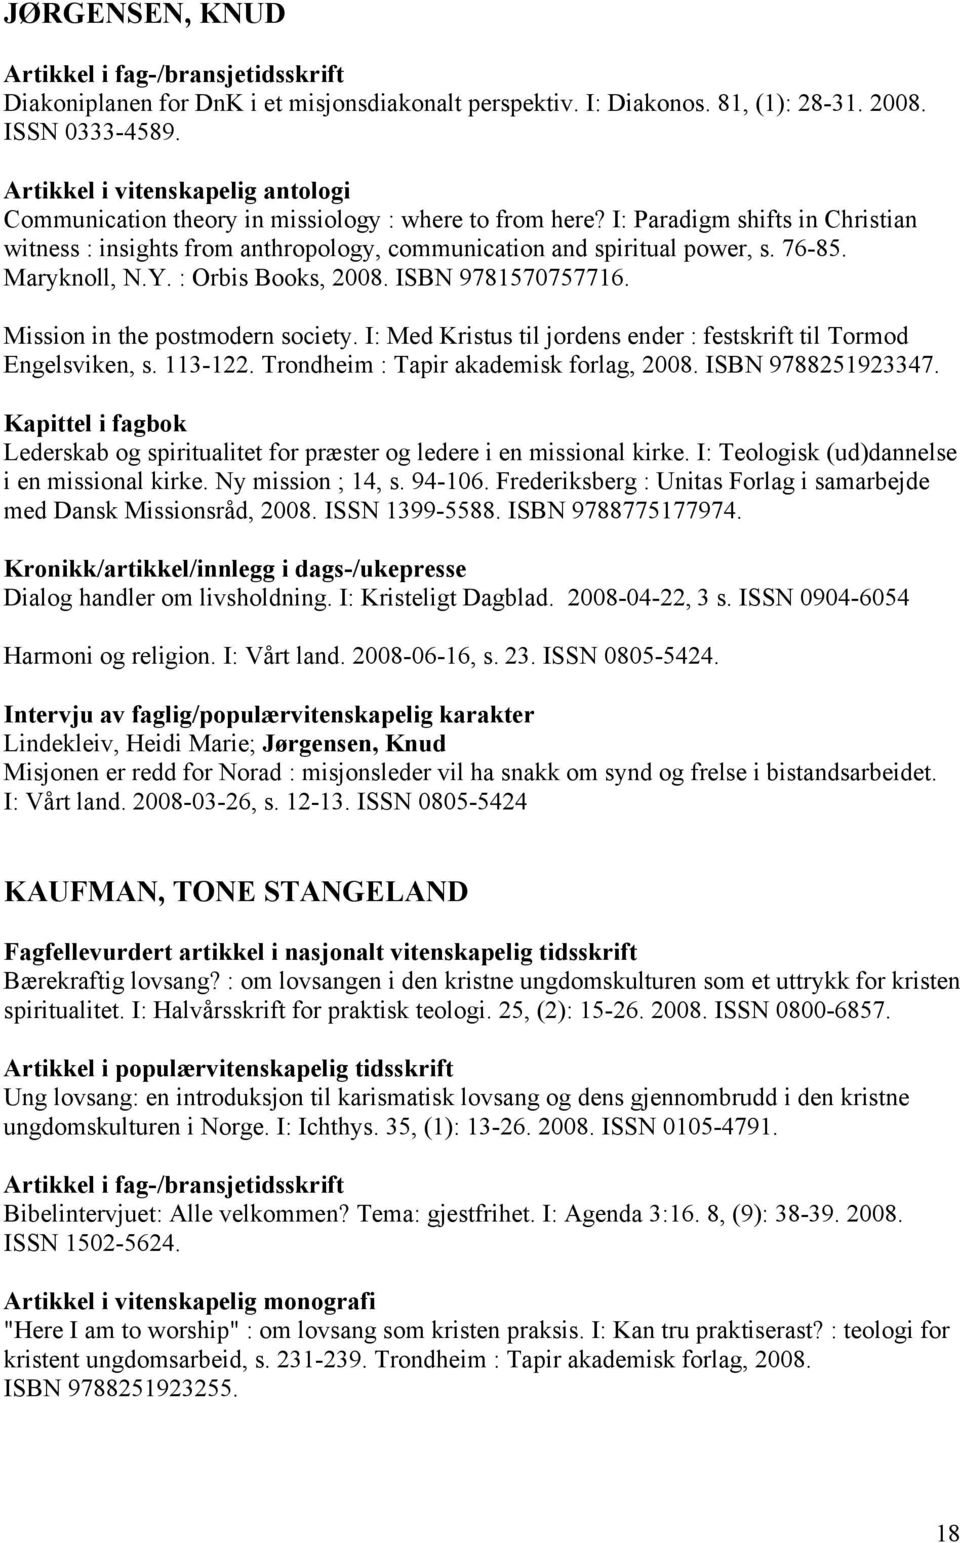 Mission in the postmodern society. I: Med Kristus til jordens ender : festskrift til Tormod Engelsviken, s. 113-122. Trondheim : Tapir akademisk forlag, 2008. ISBN 9788251923347.